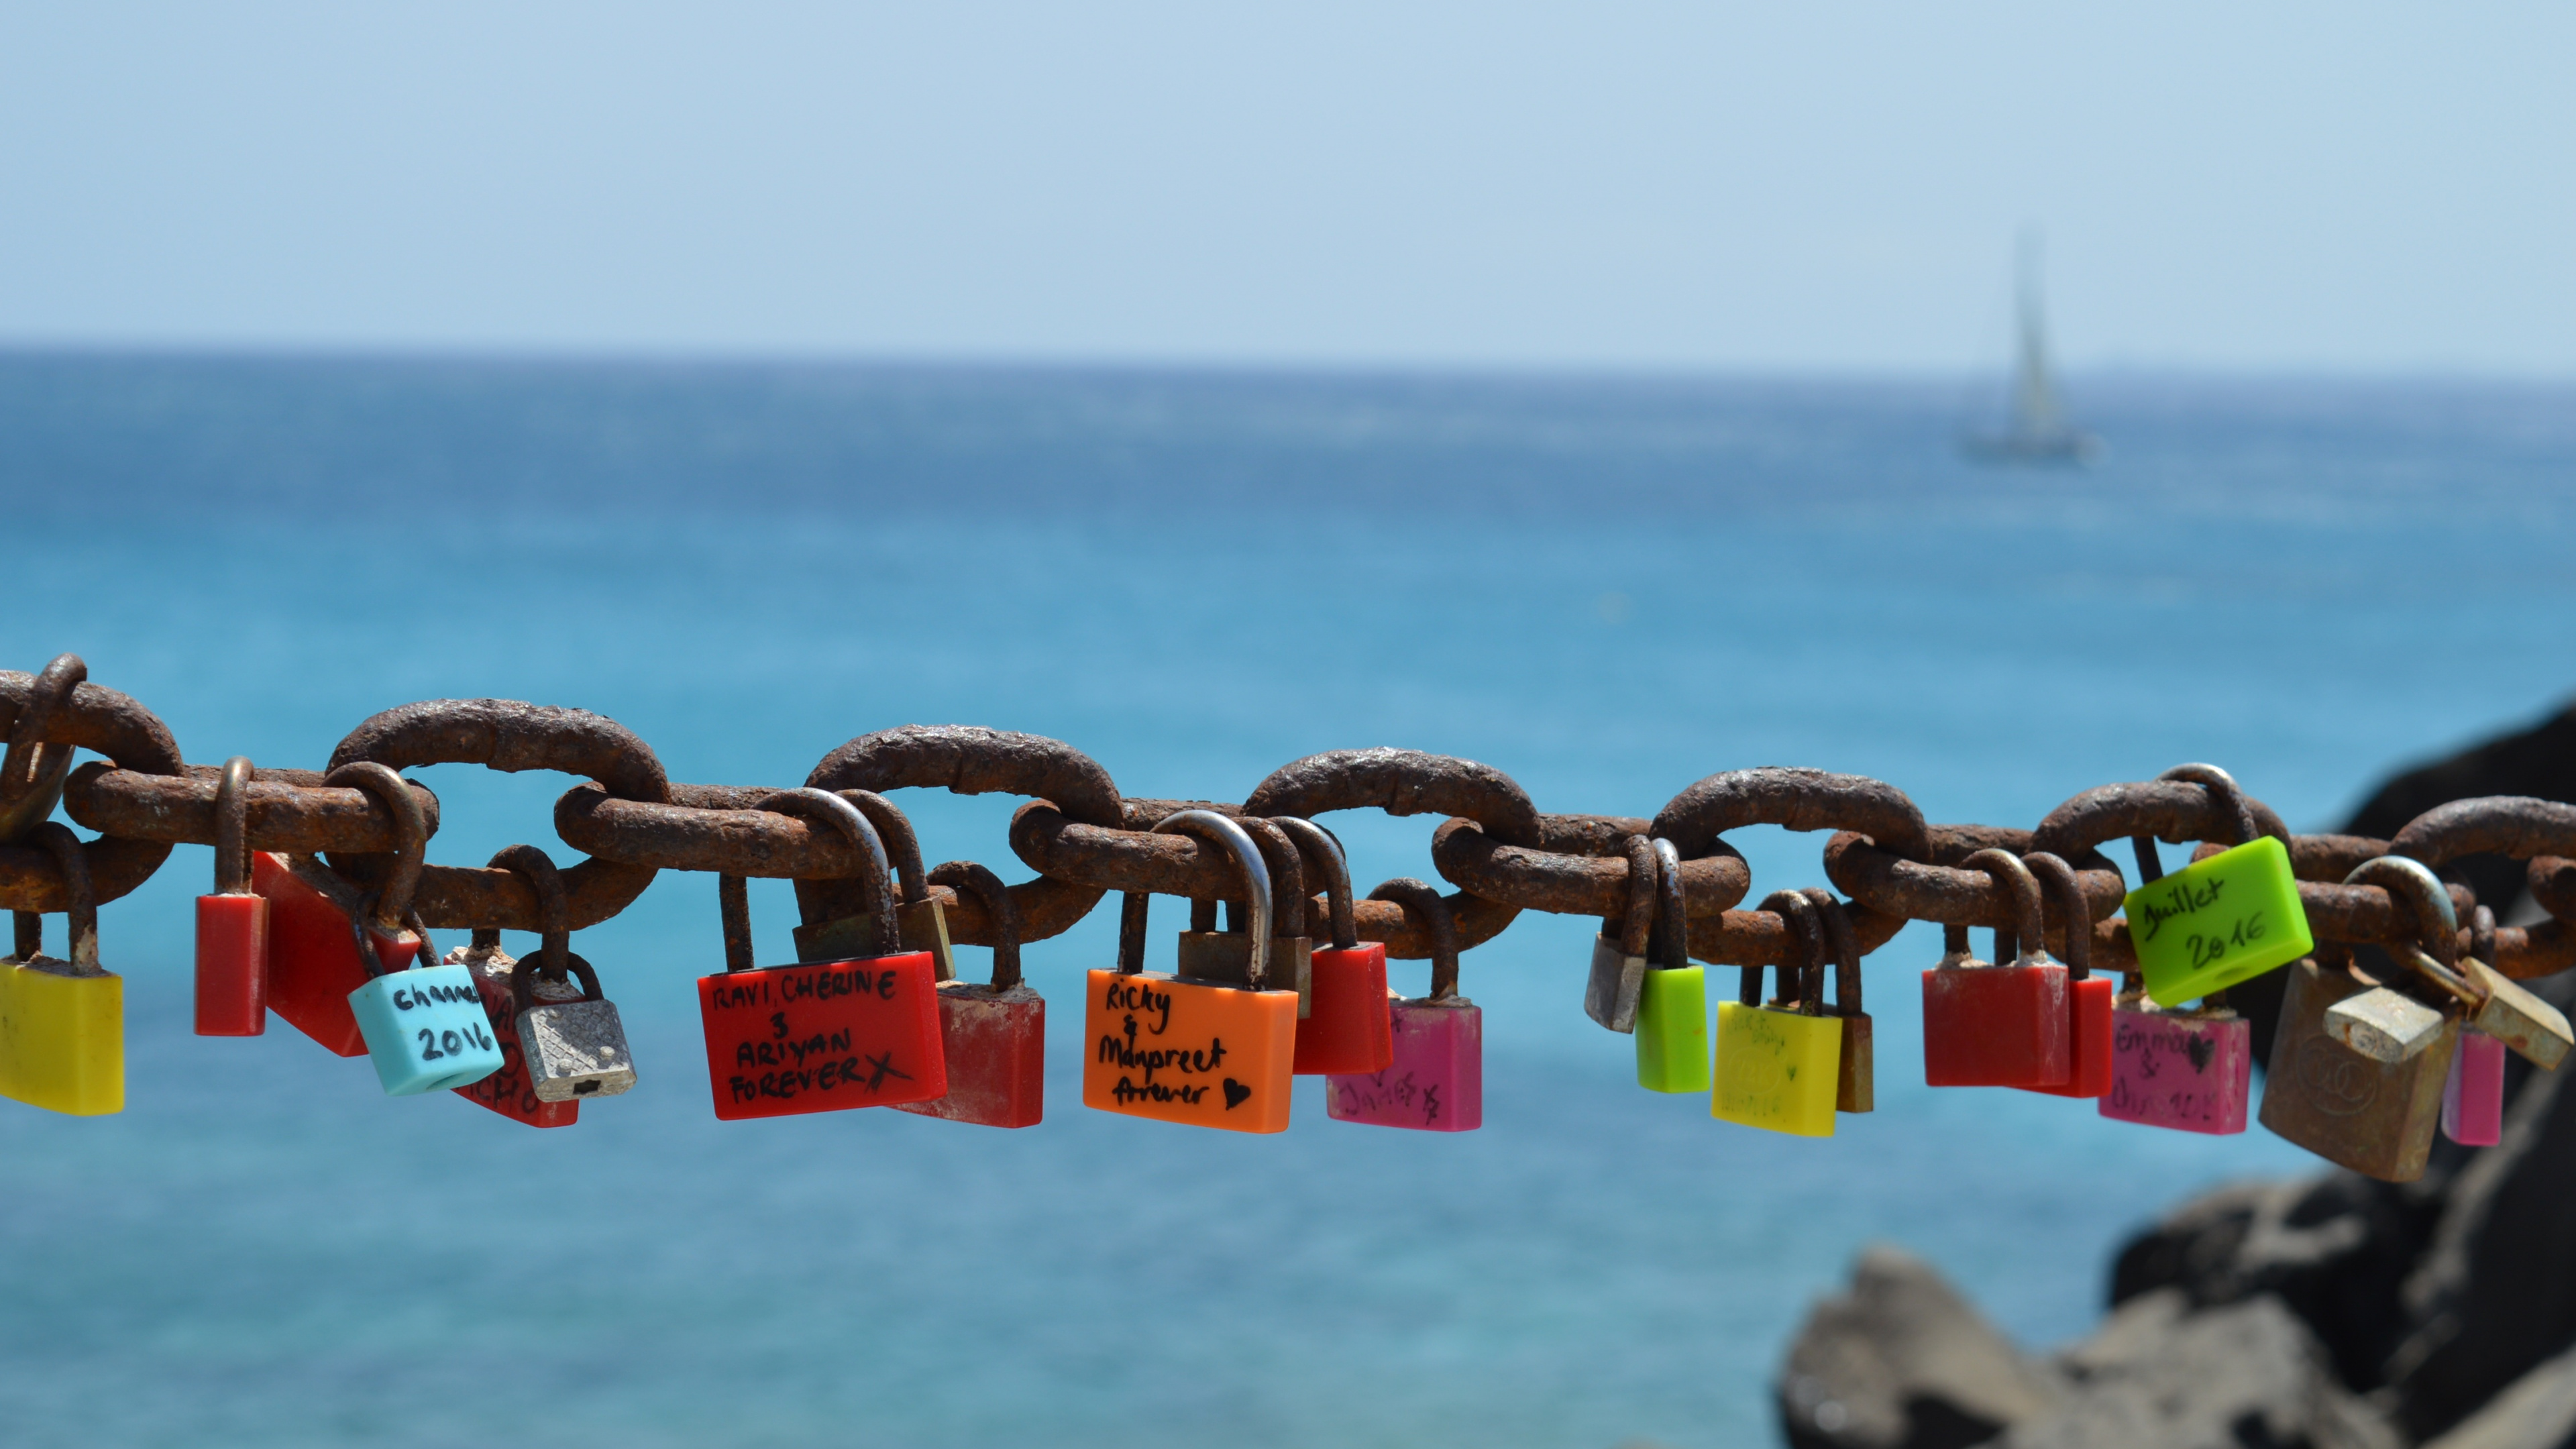 挂锁, 锁定, 锁和钥匙, 大海, 海洋 壁纸 3840x2160 允许